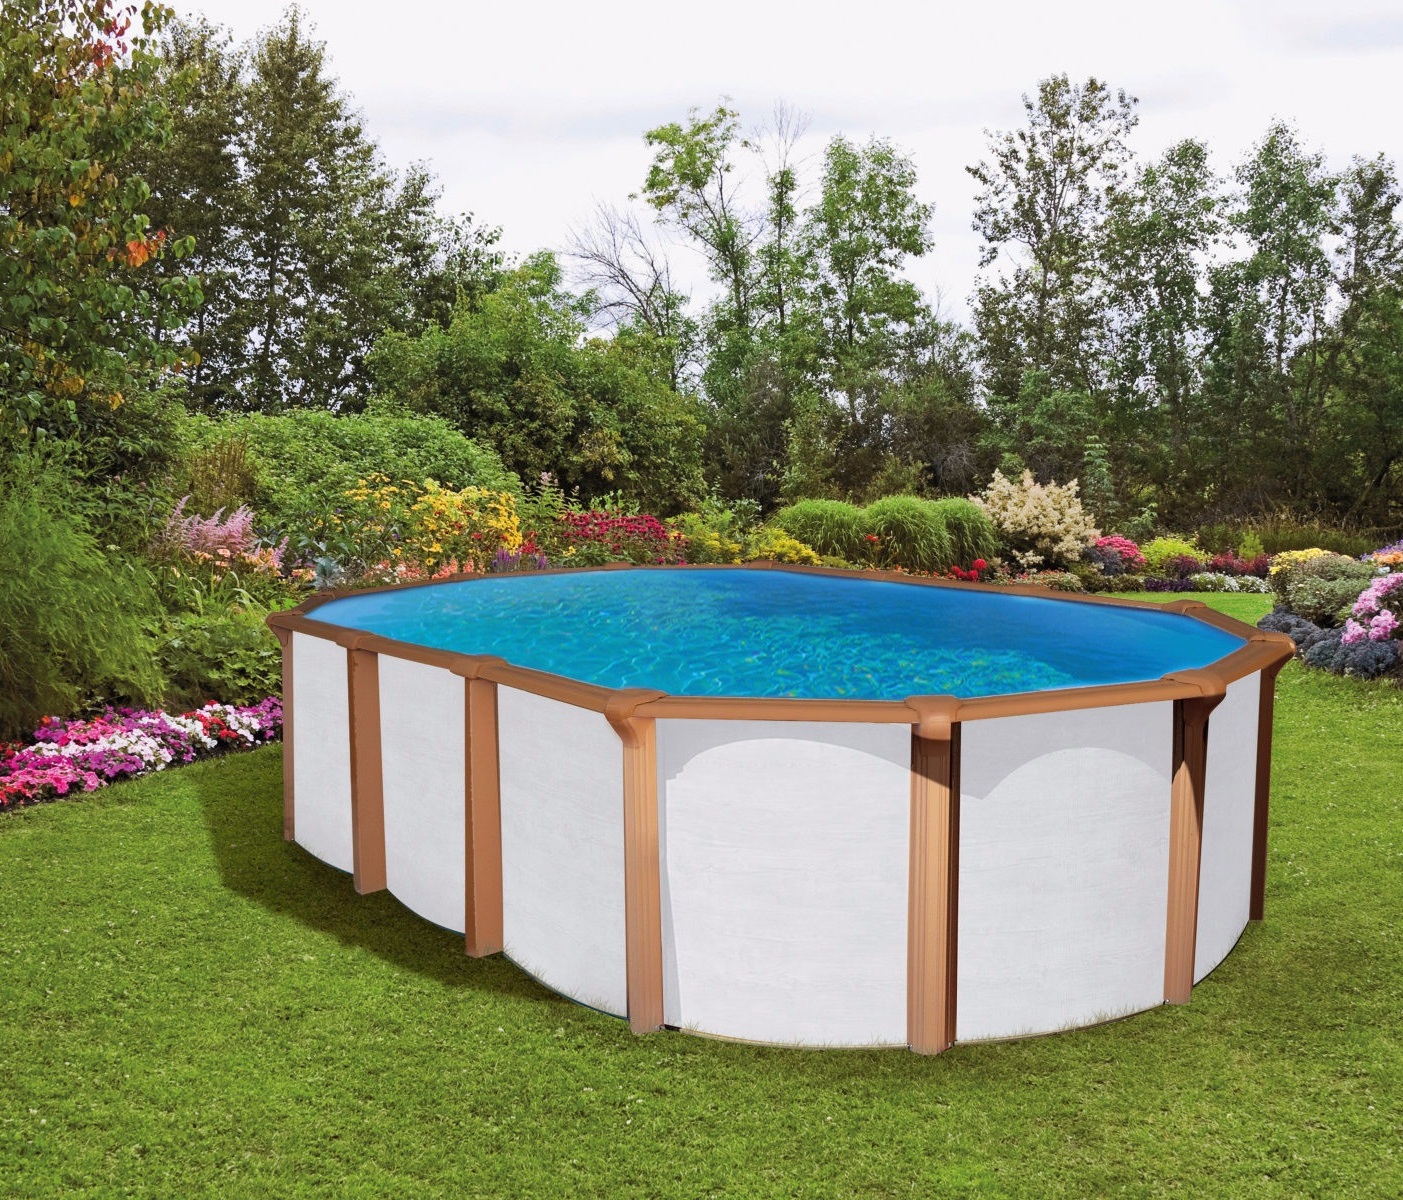 Pool 9,20 x 4,6 x 1,35m white wood Oval Stahlwand Schwimmbecken breiter Handlauf